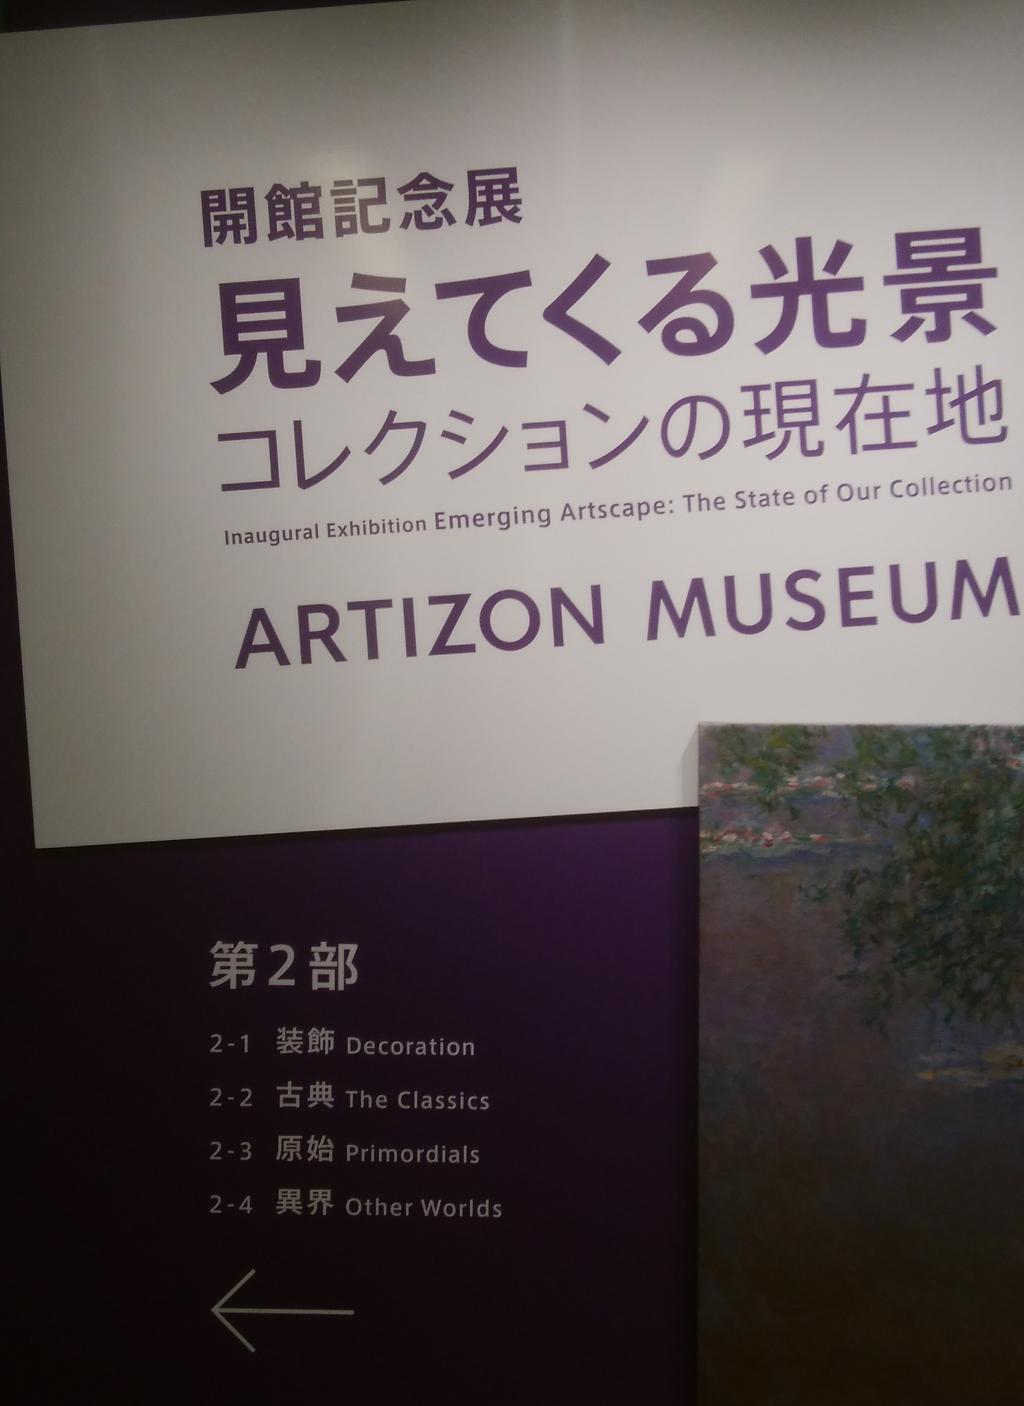  ARTIZON MUSEUM 開館
